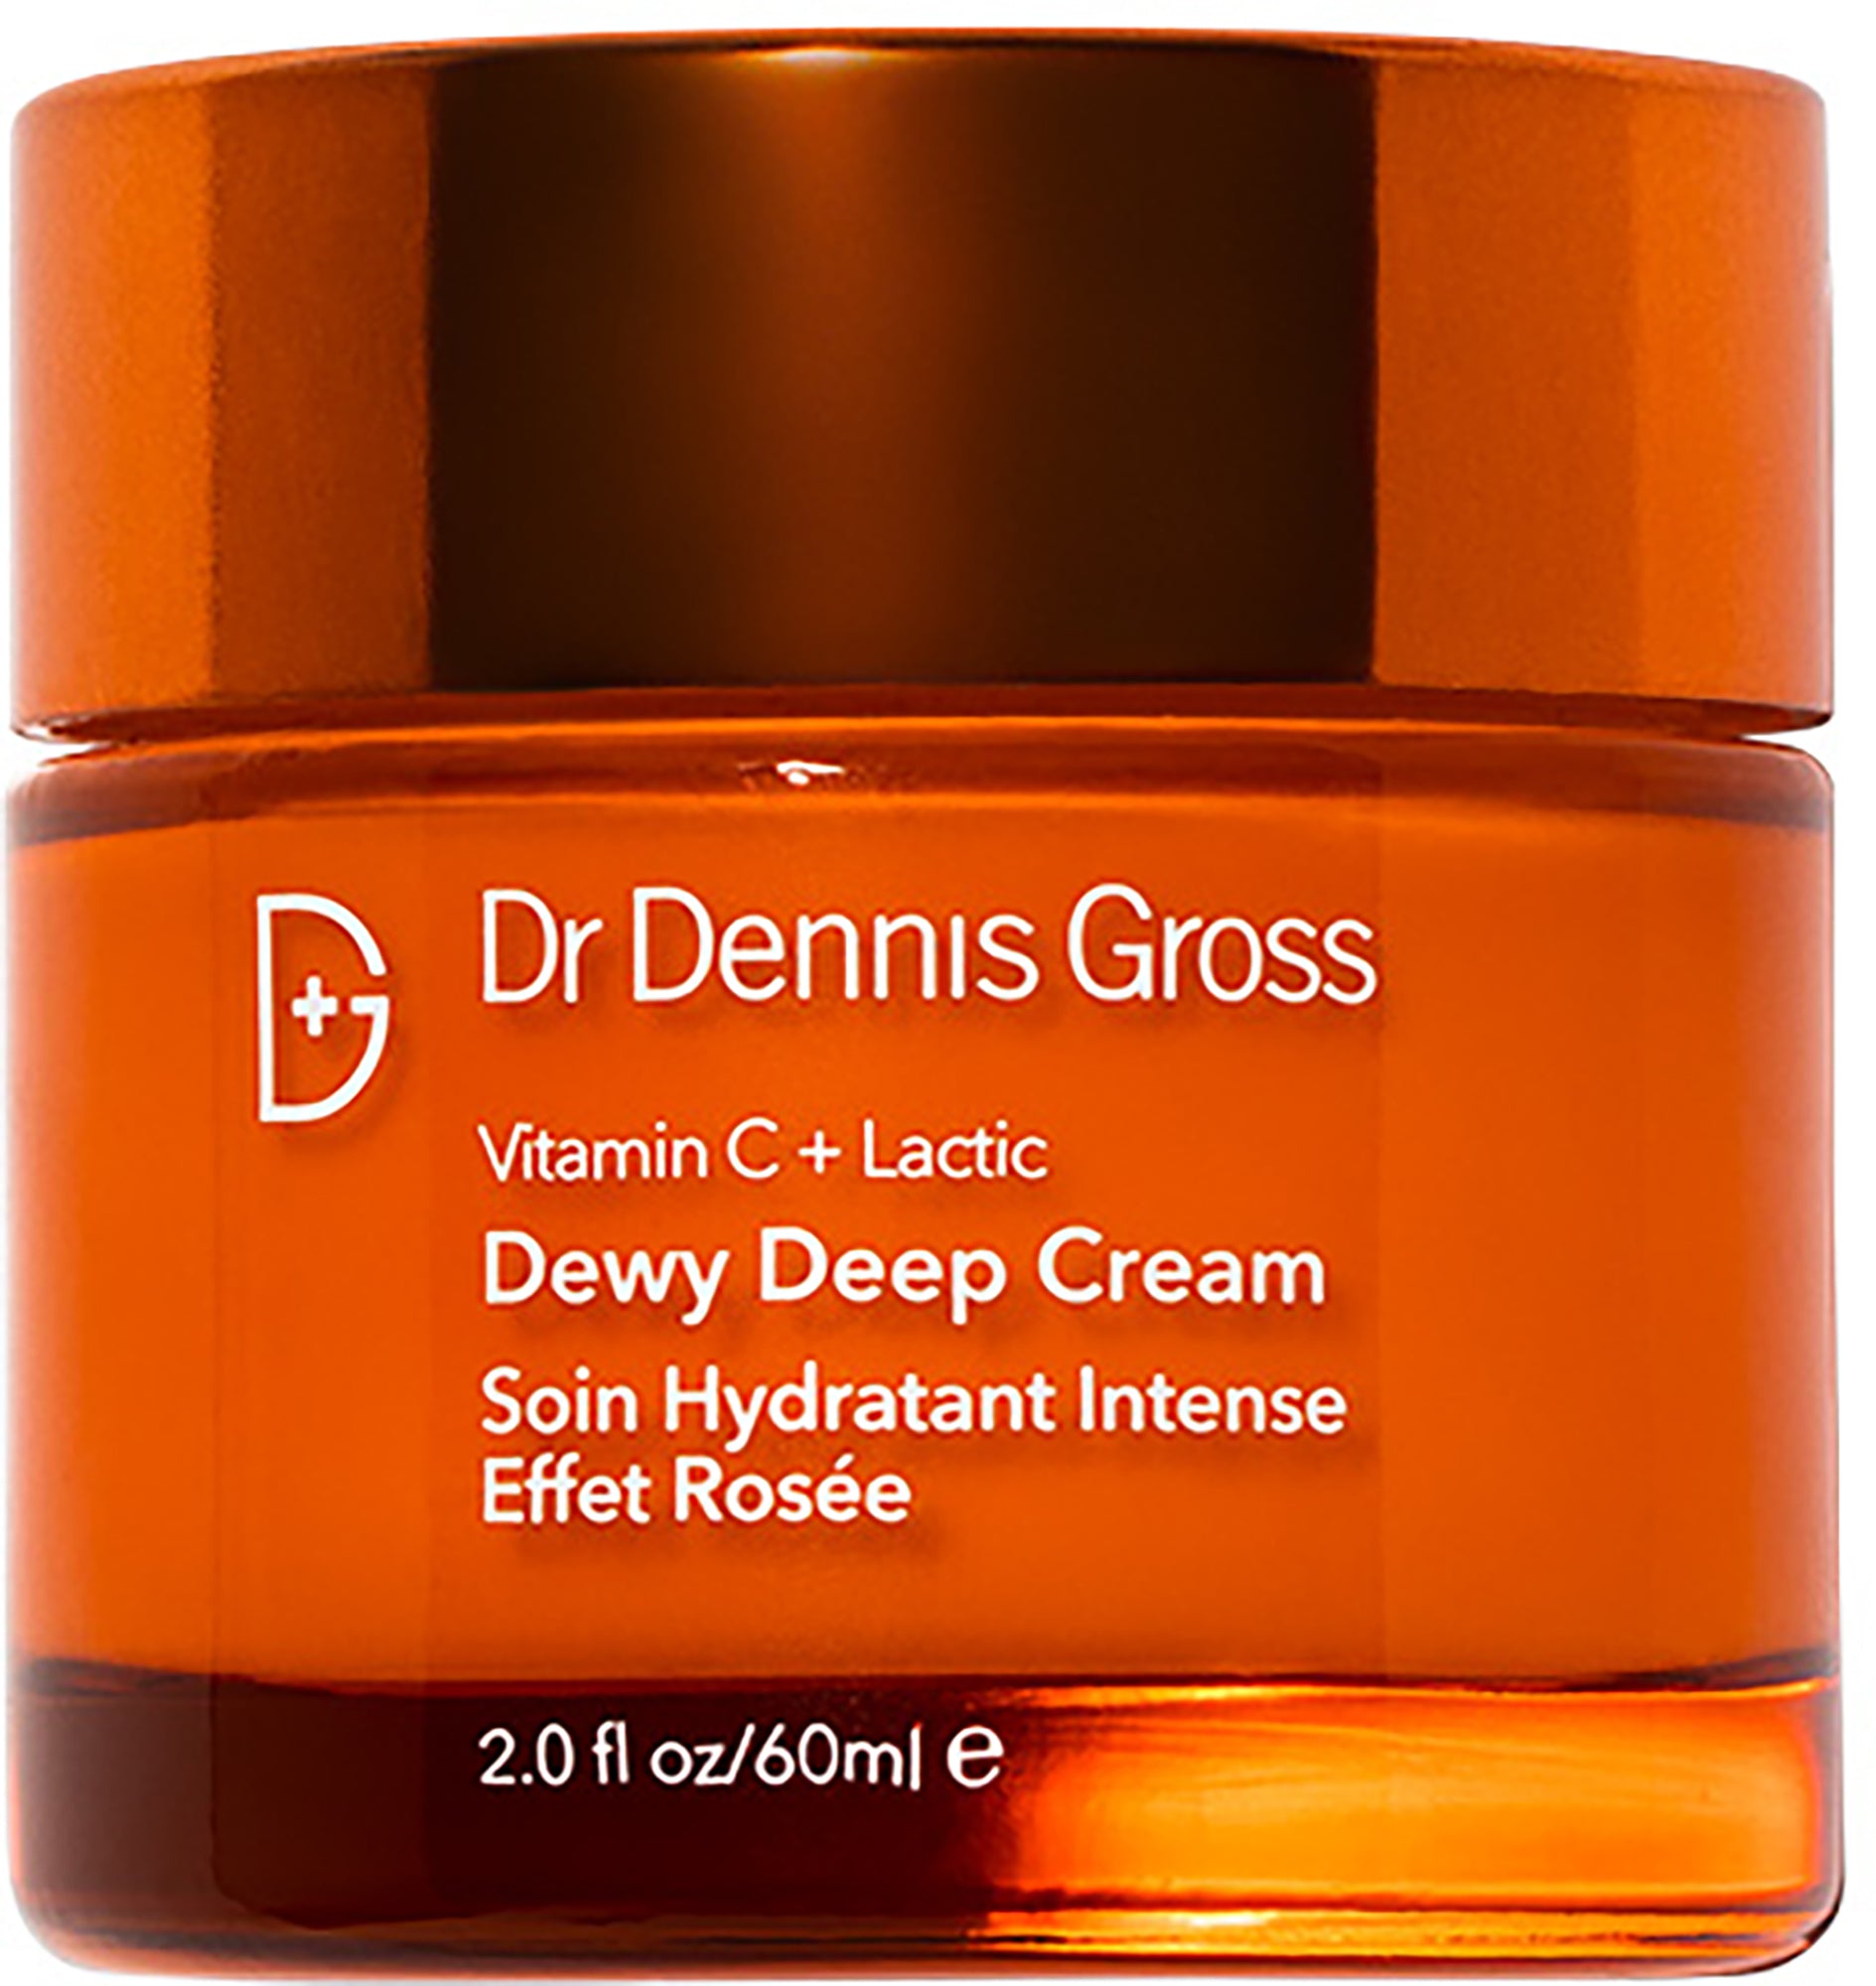 Dr Dennis Gross Dewy Deep Cream